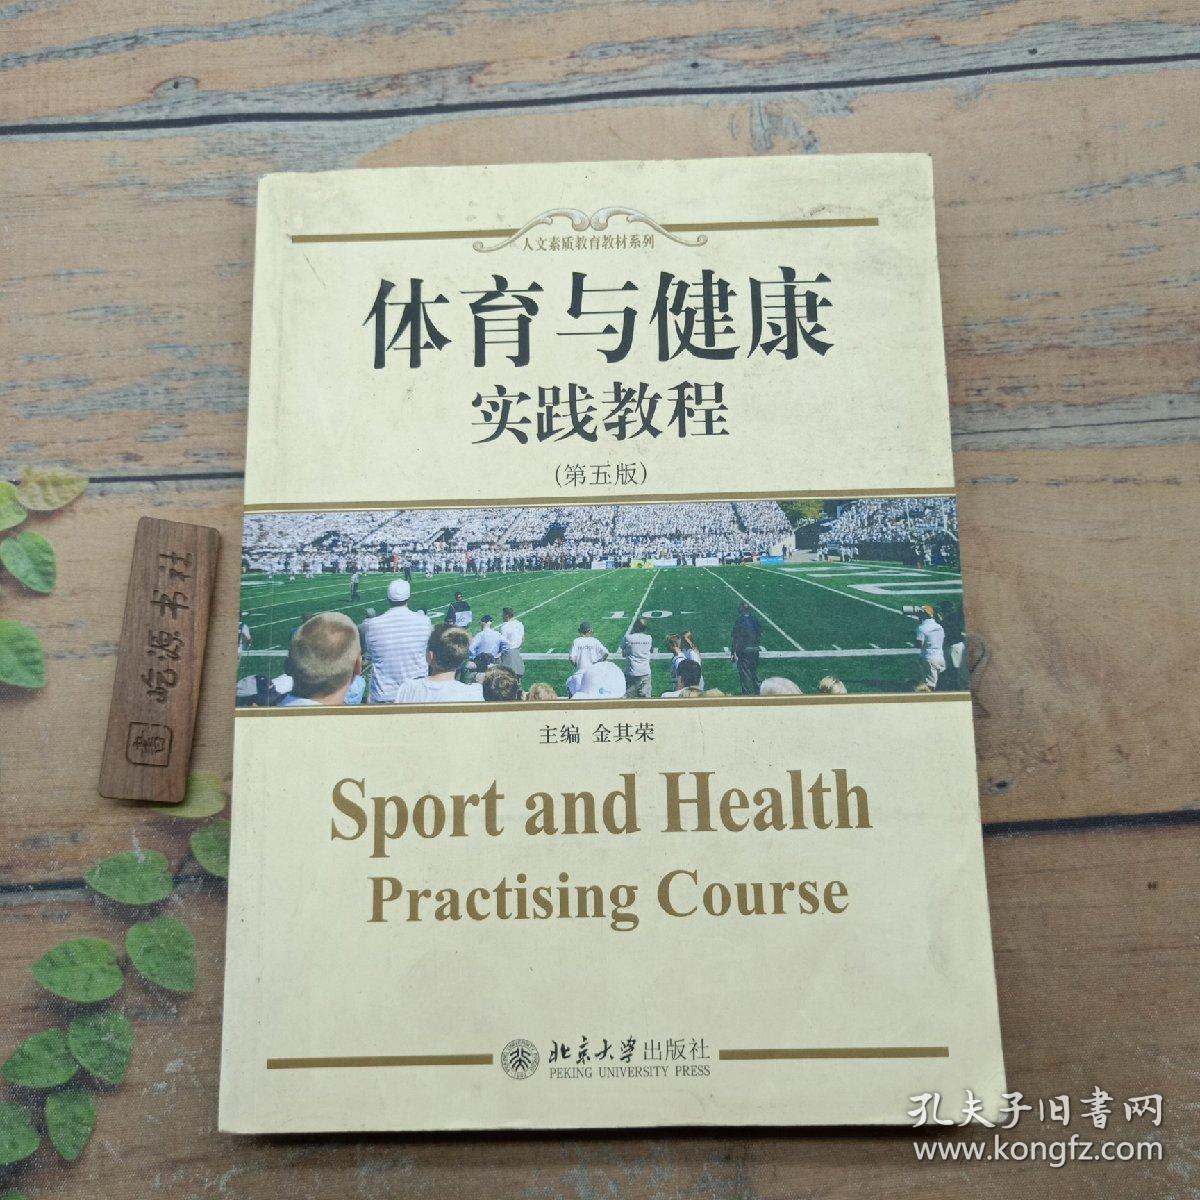 体育与健康：实践教育（第五版）